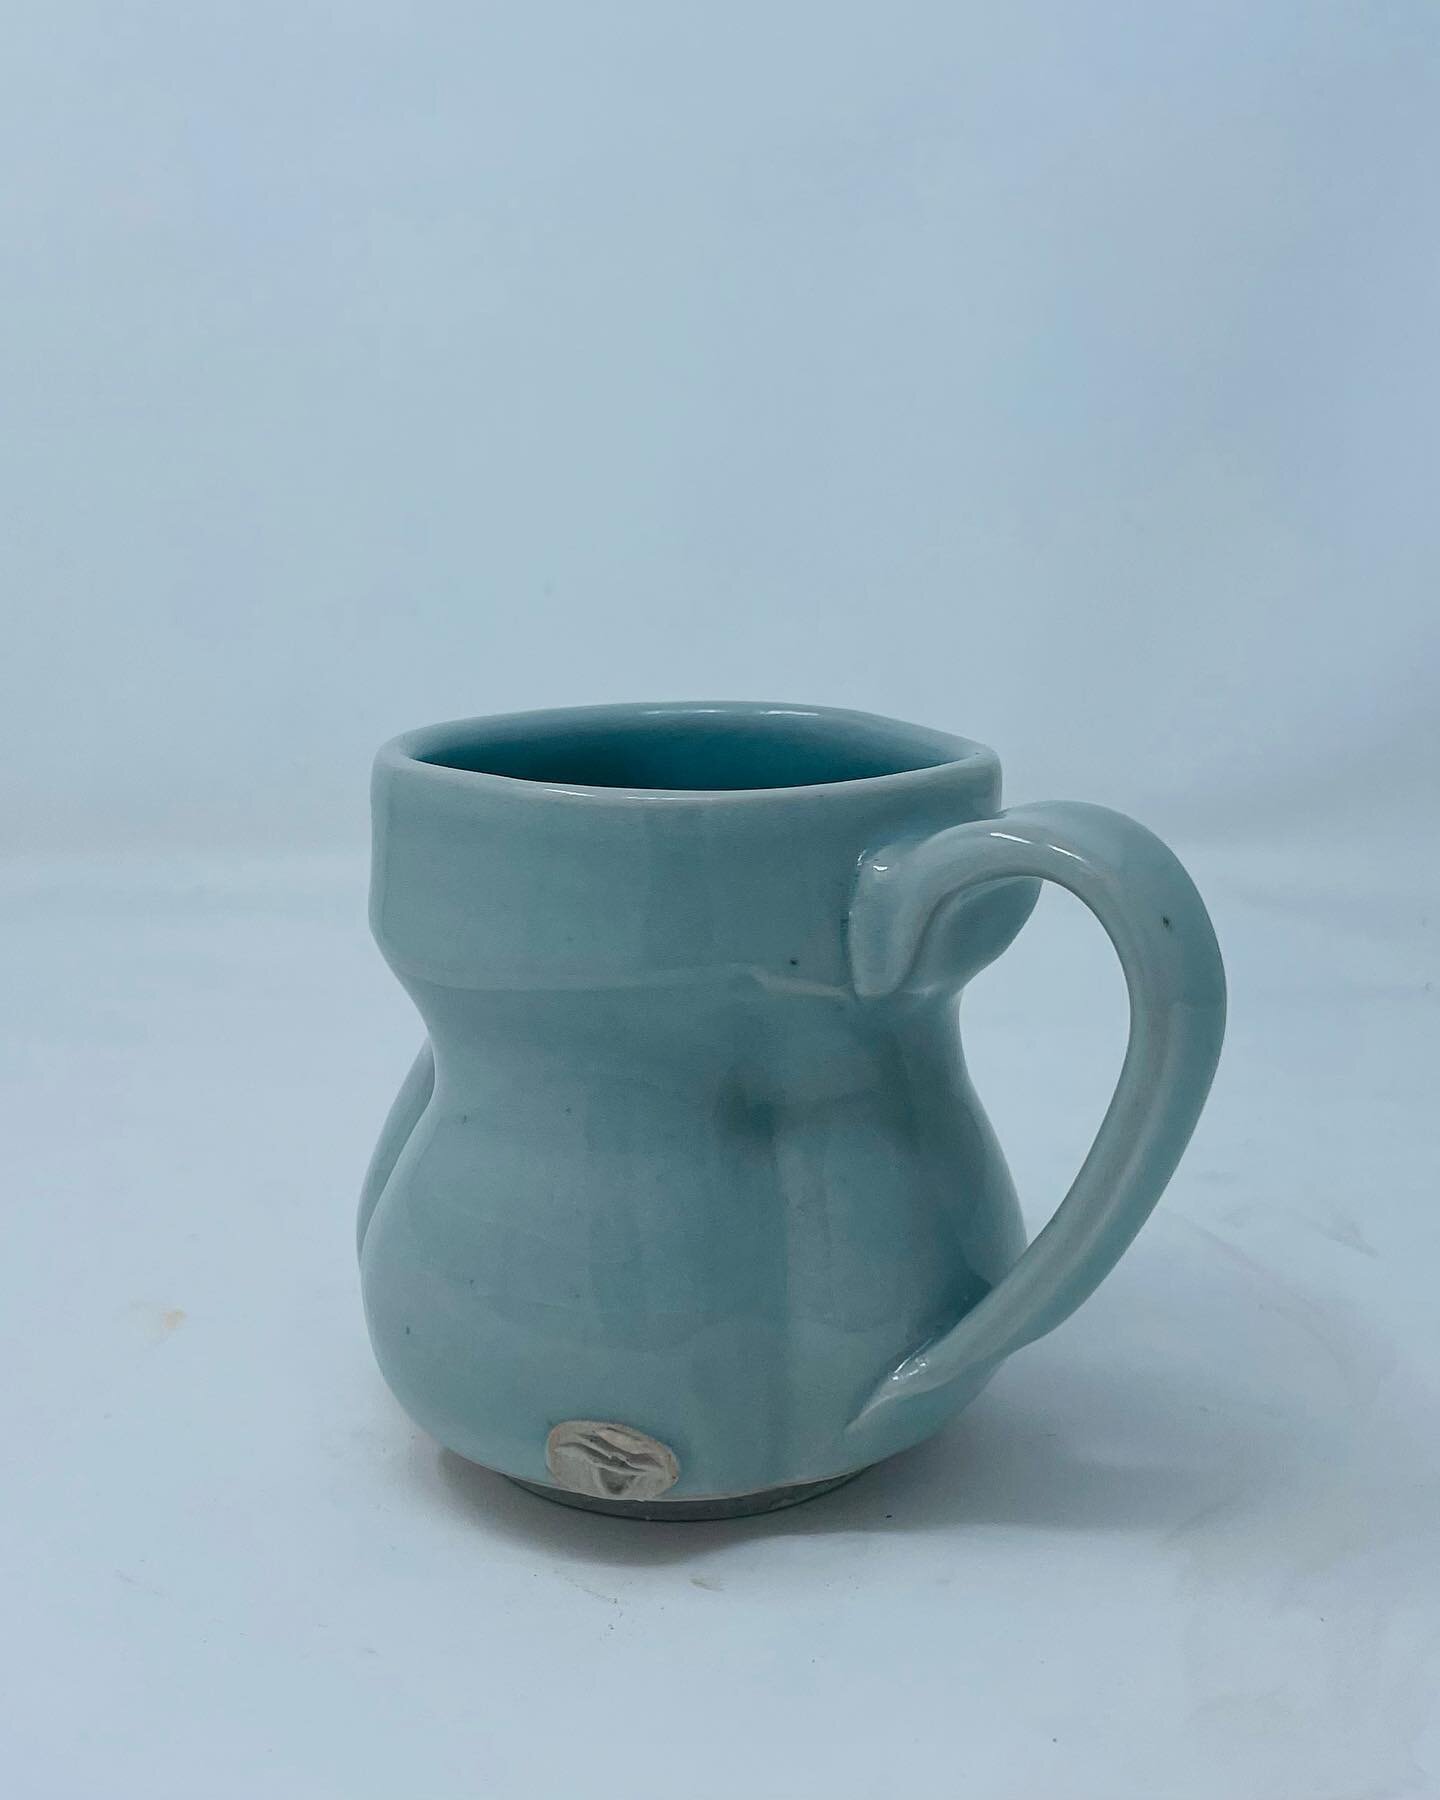 Porcelain mug fired in cone 10 reduction. Blue celadon glaze.